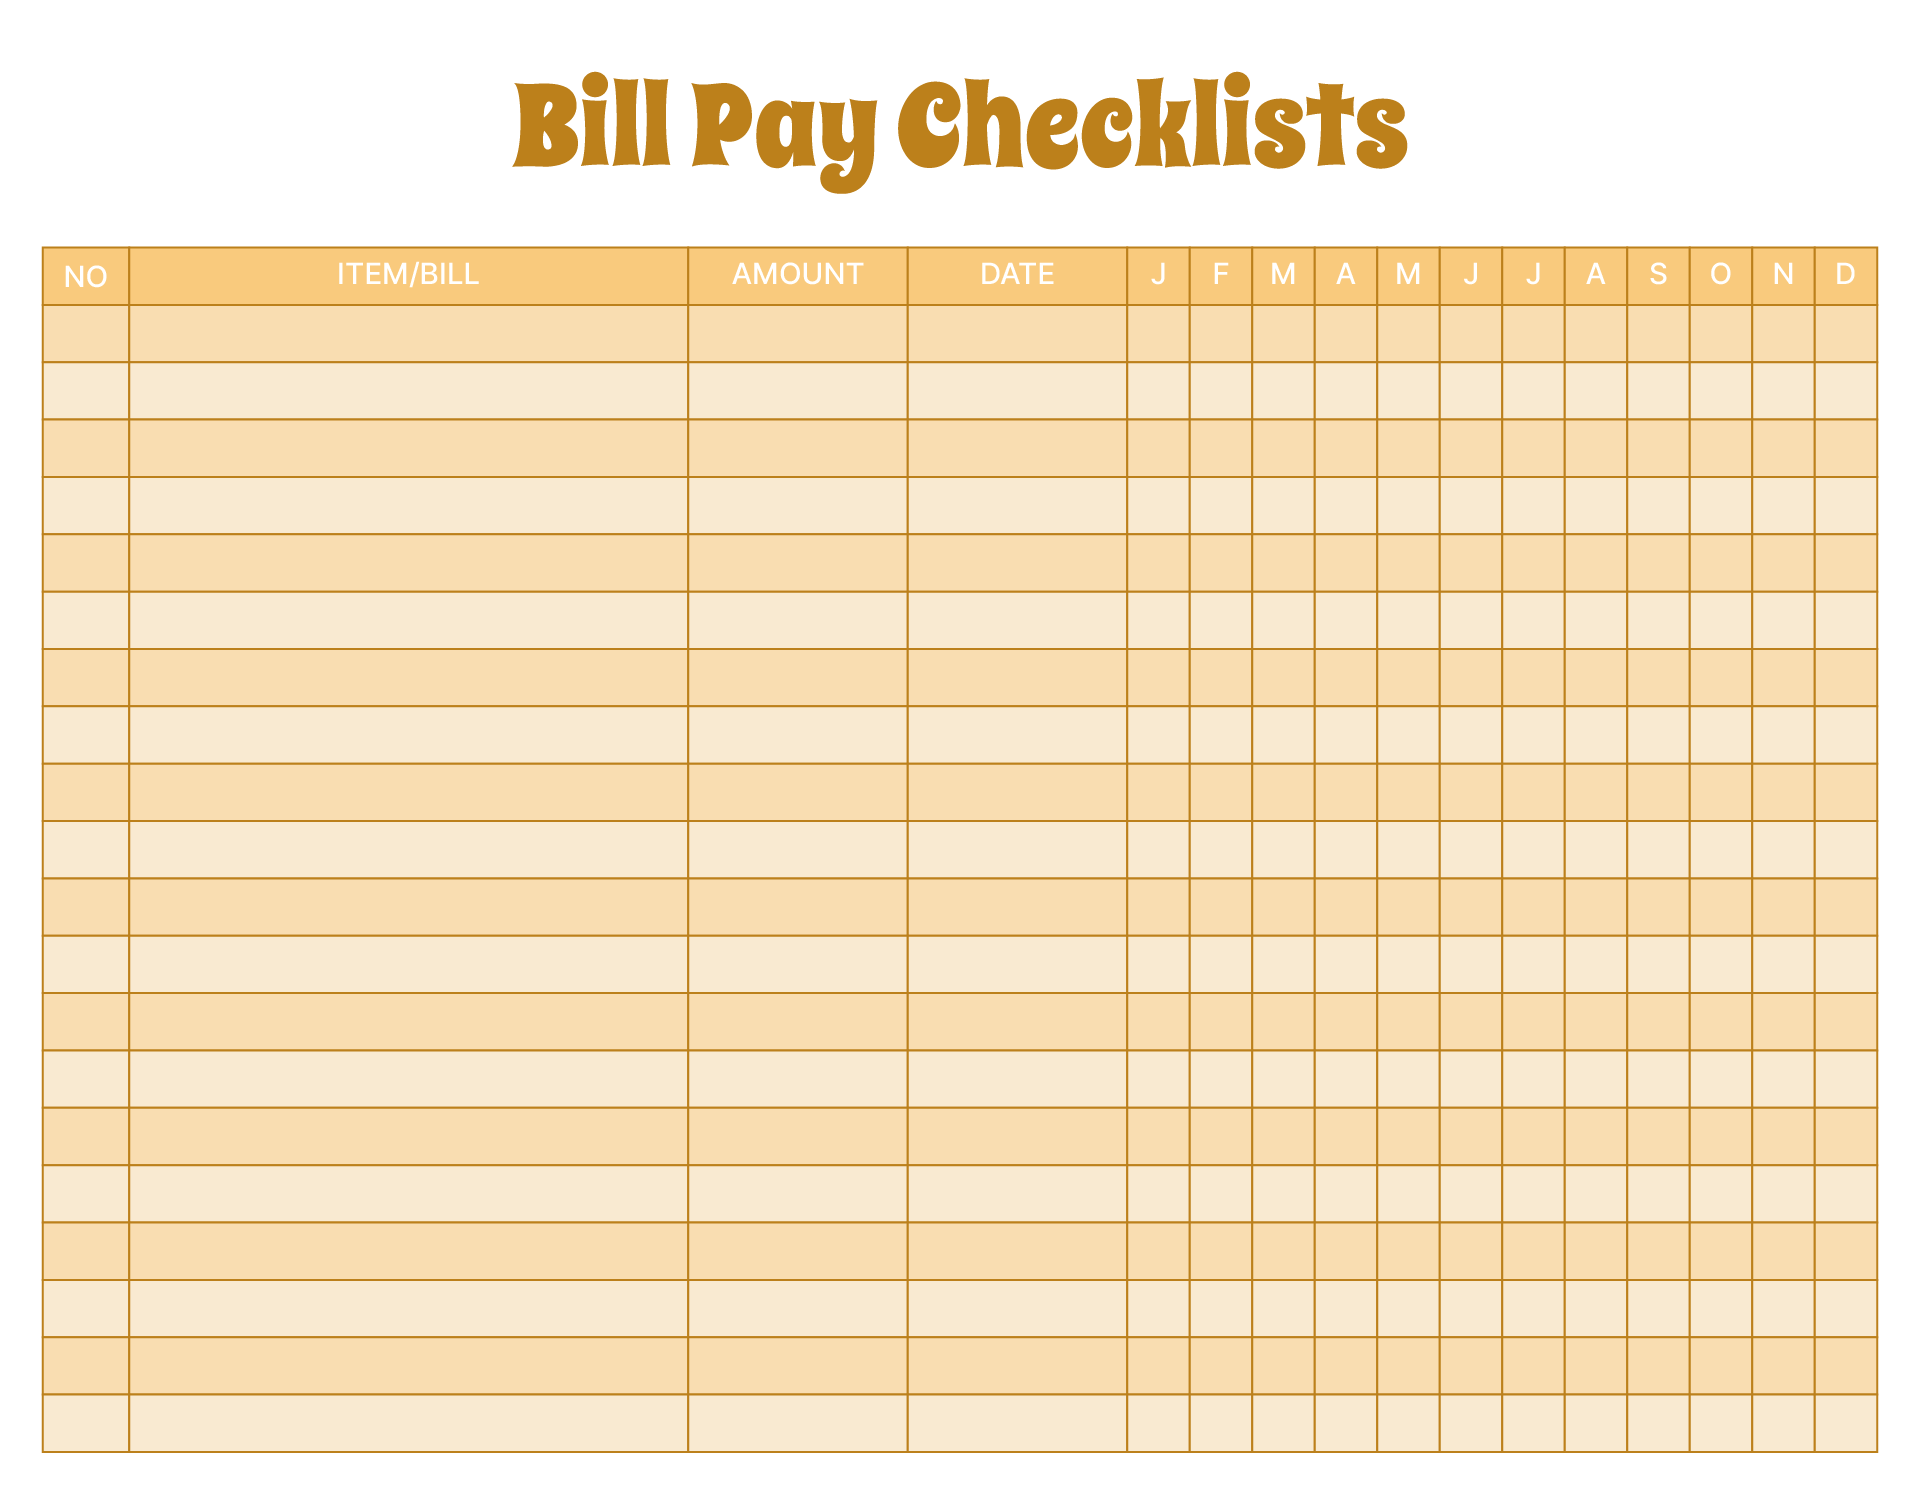 Bill Pay Checklists & Bill Calendars